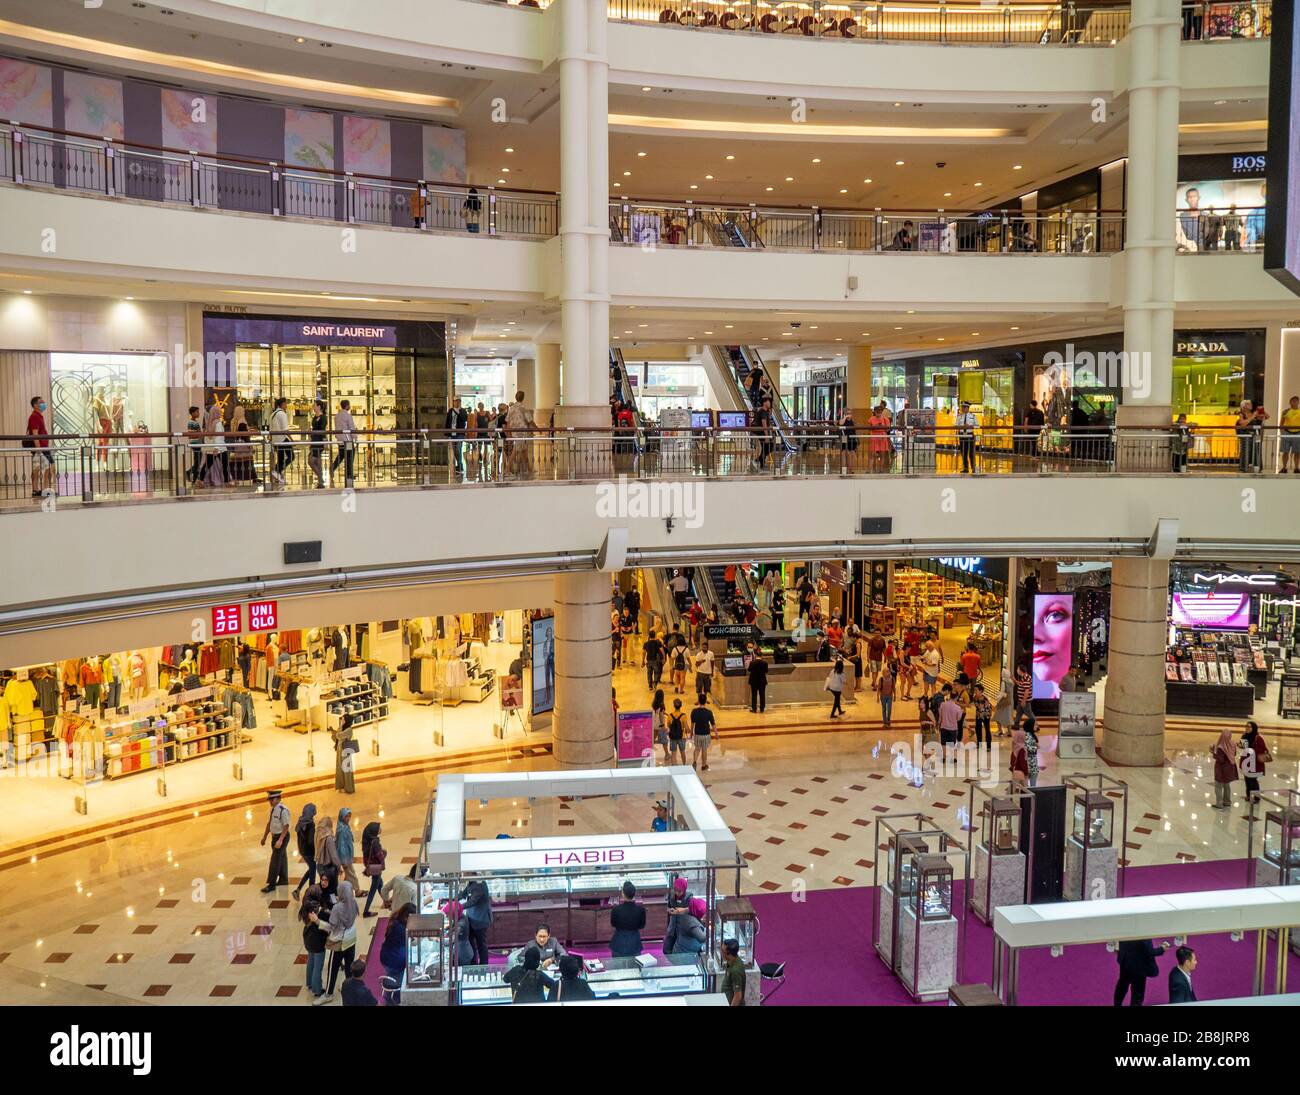 Magasins et boutiques à plusieurs niveaux au centre commercial Suria KLCC, au pied des tours Petronas Kuala Lumpur en Malaisie. Banque D'Images